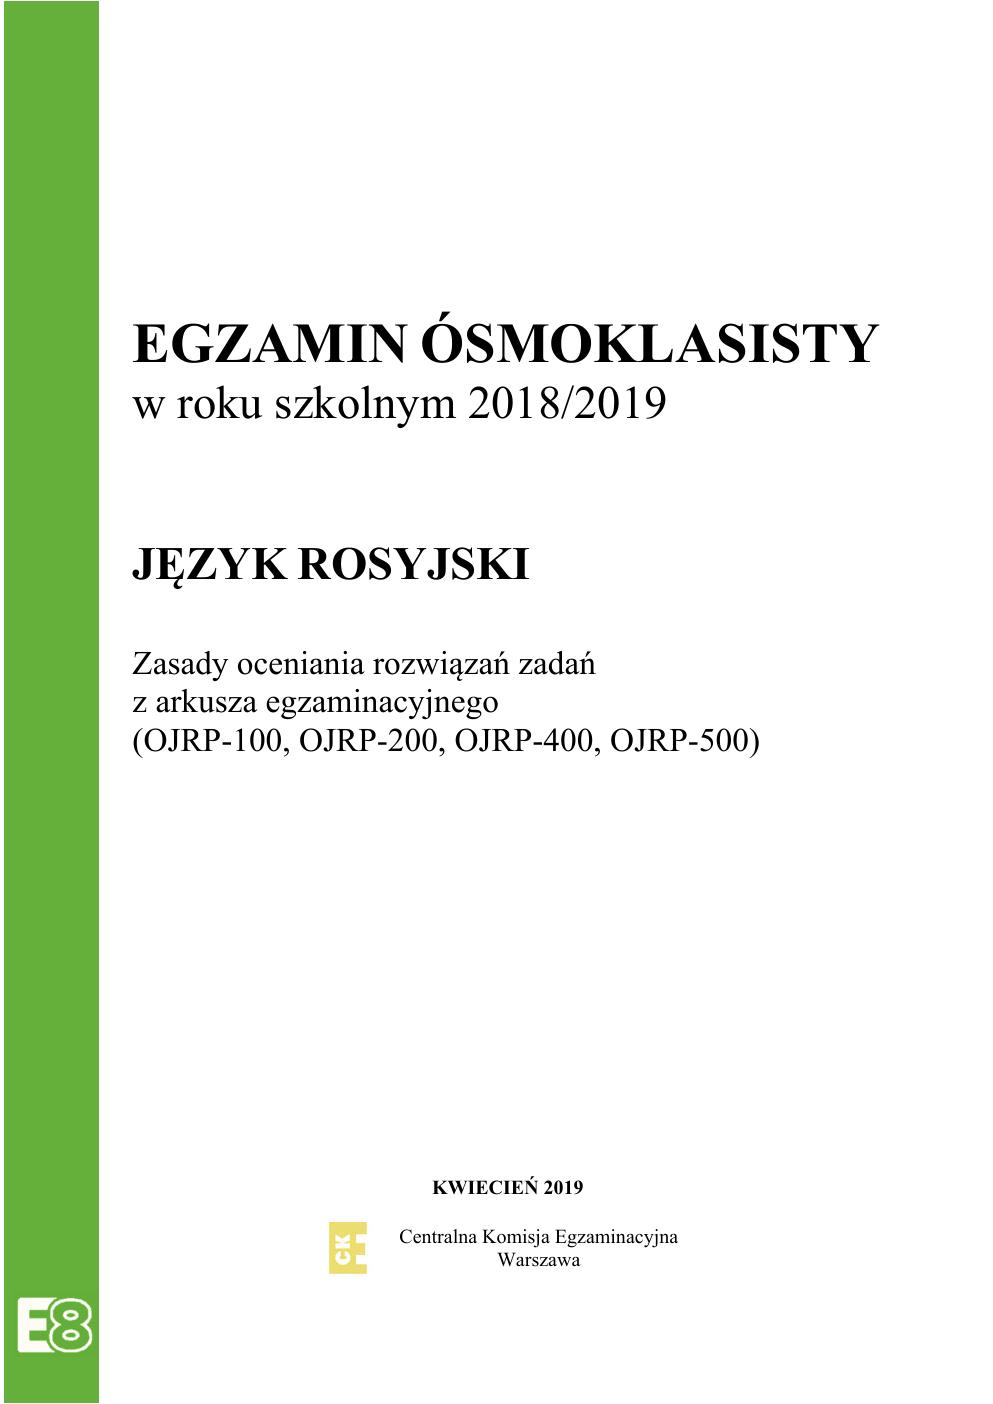 odpowiedzi - rosyjski - egzamin ósmoklasisty 2019-01